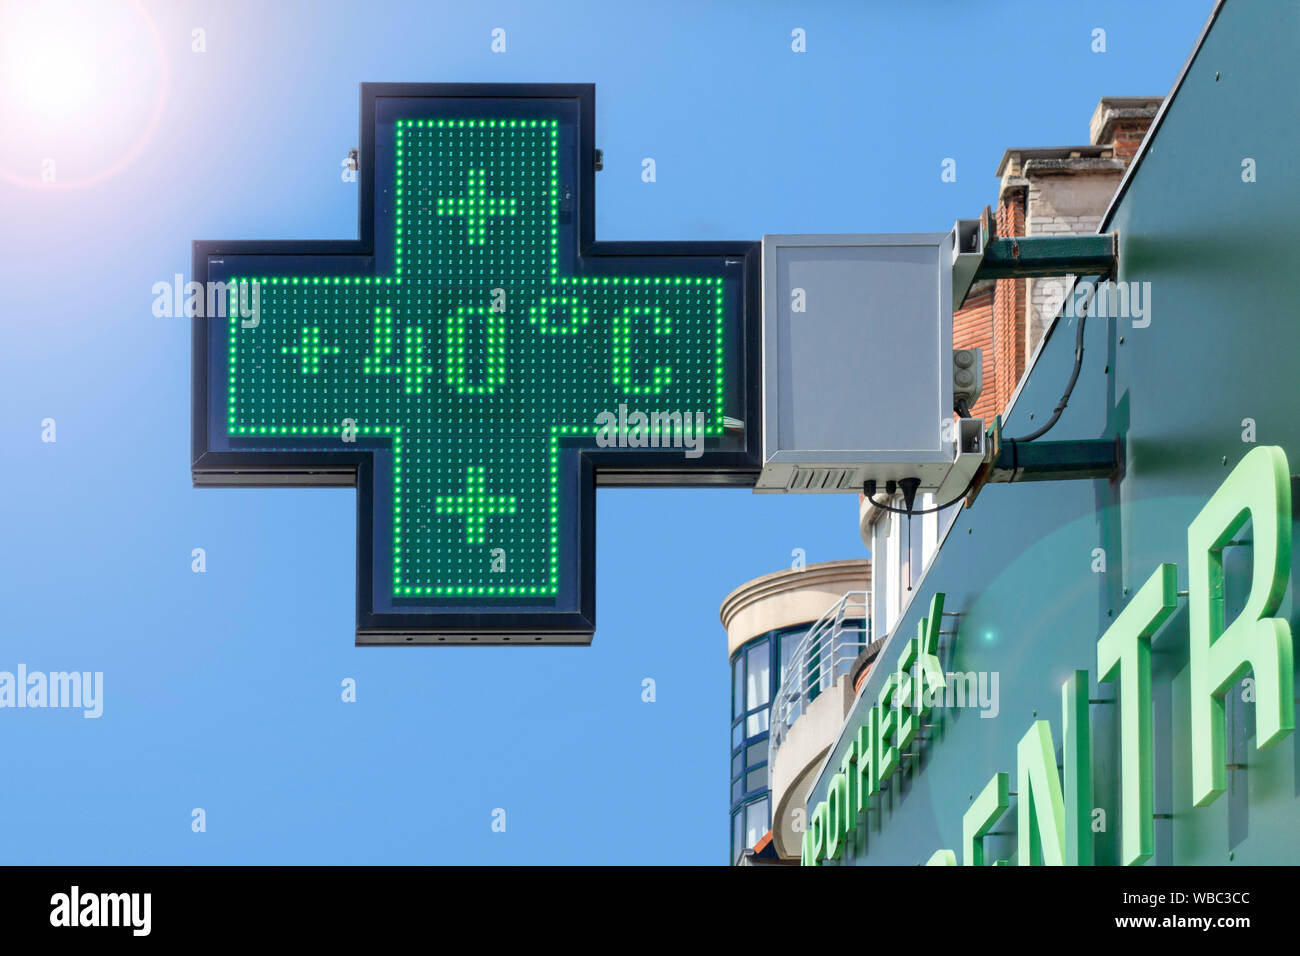 Thermomètre dans l'écran vert de la pharmacie affiche une température extrêmement chaude de 40 degrés Celsius / 40°C / 40 °C pendant la vague de chaleur d'été / vague de chaleur Banque D'Images